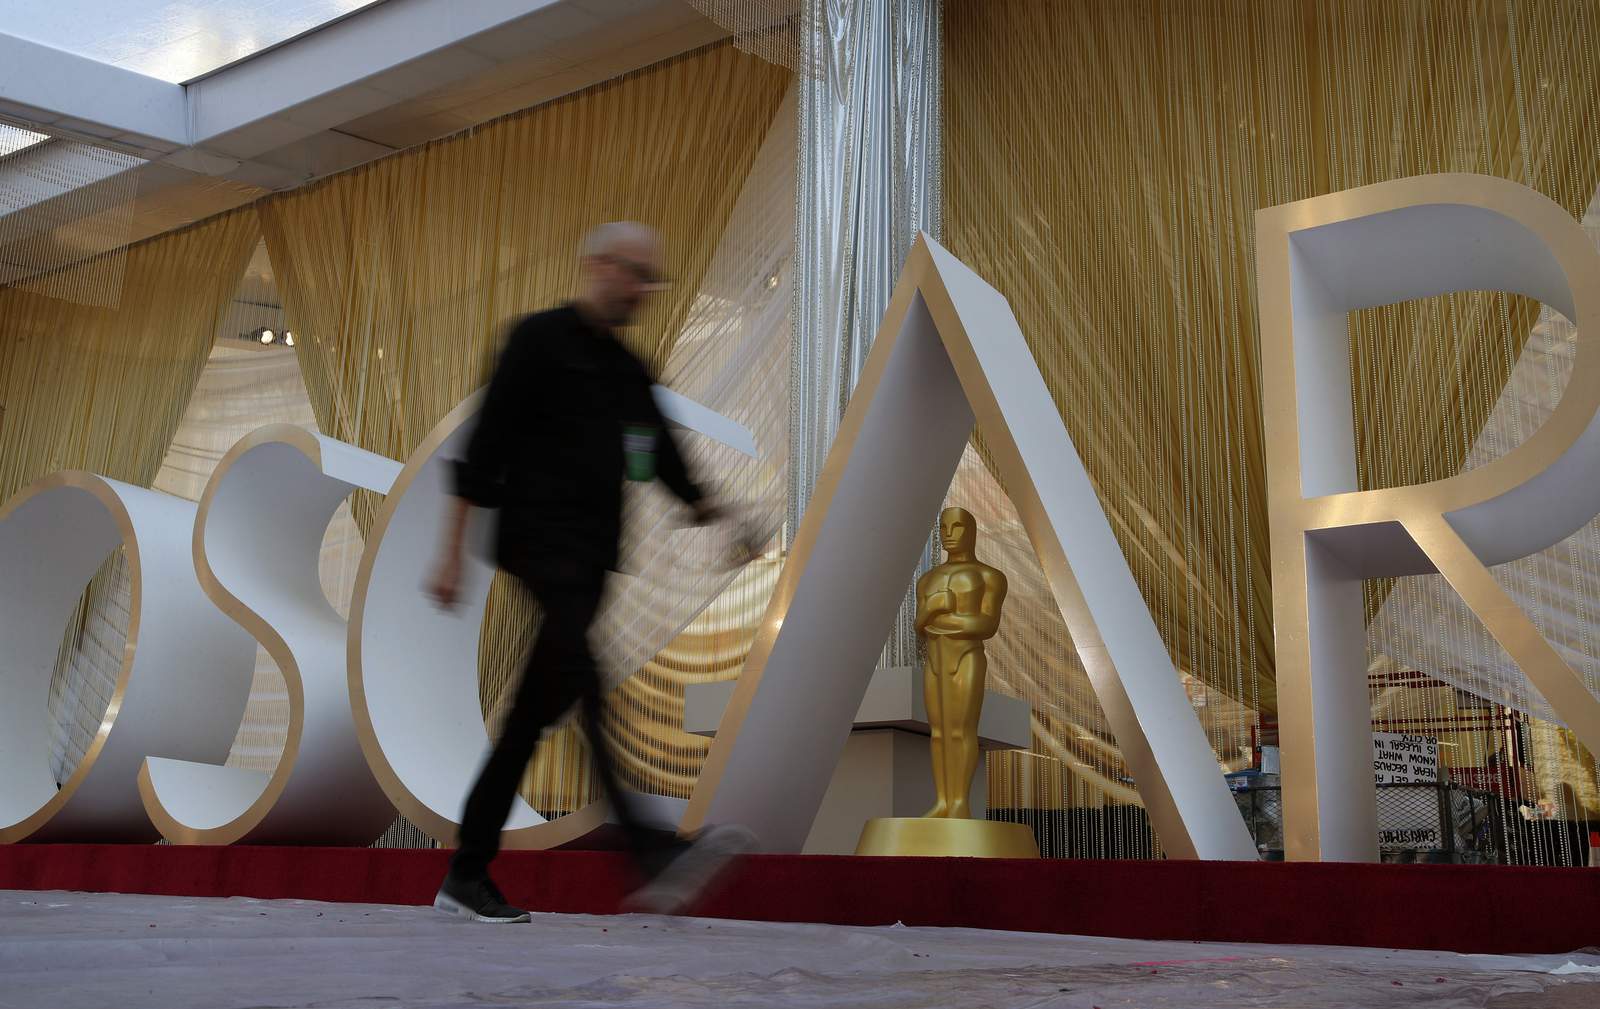 Hanks, Fonda and more stars amuse at Oscars rehearsals